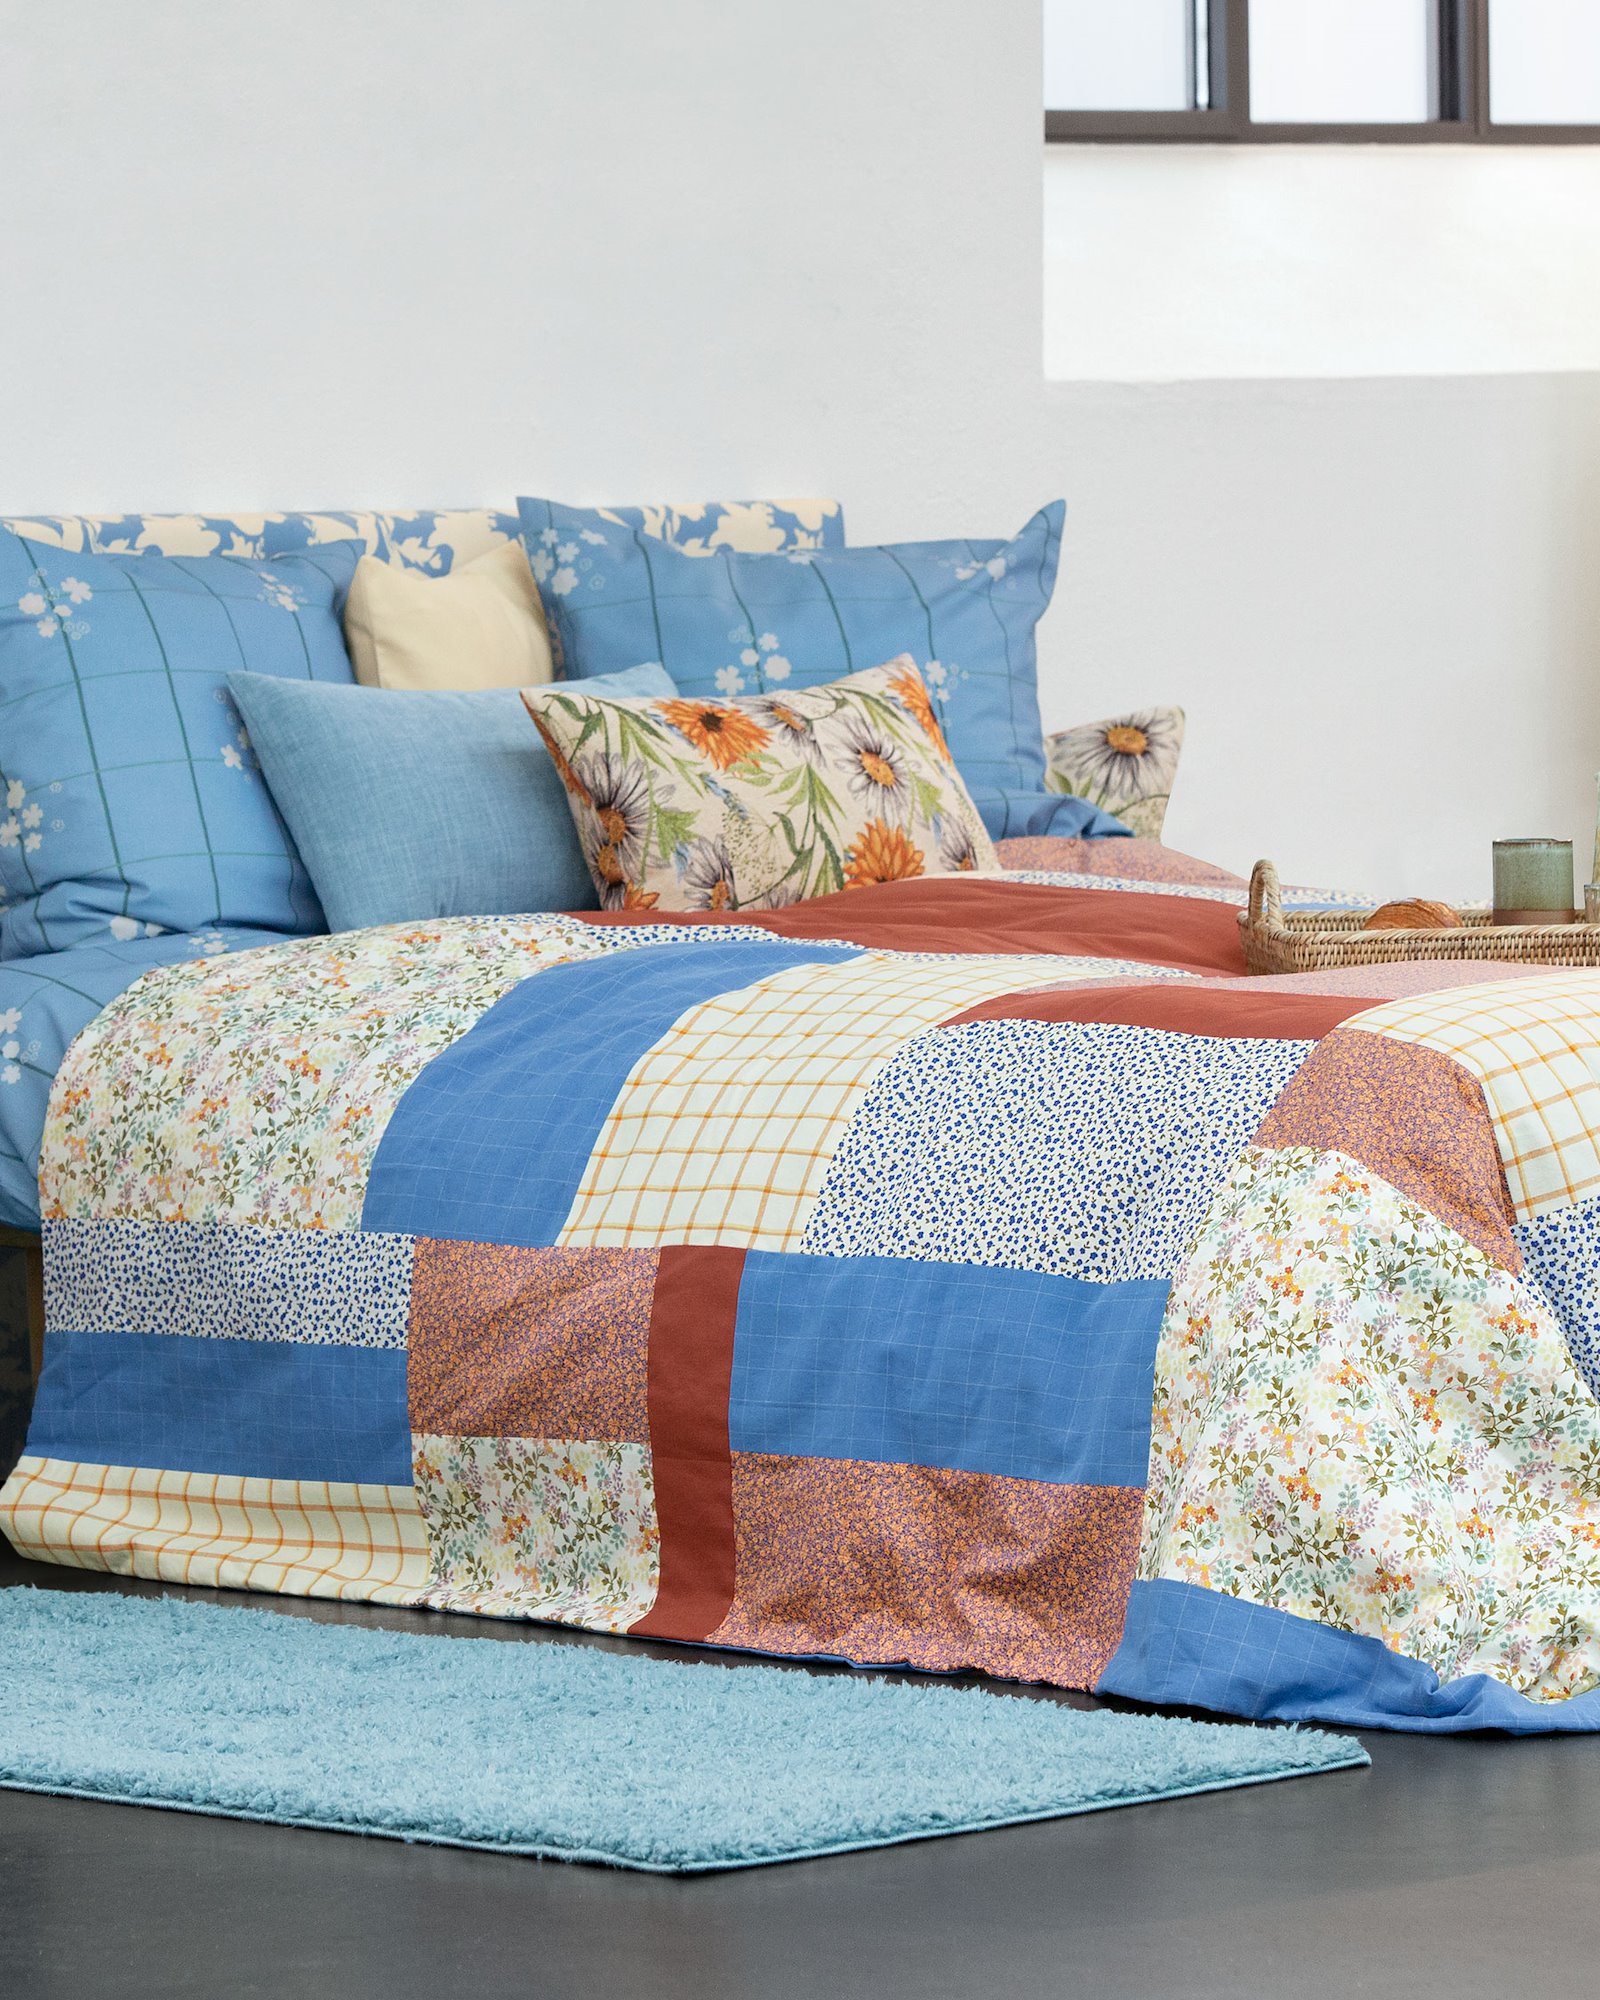 Sewing pattern: Bedspread DIY3049_image.jpg